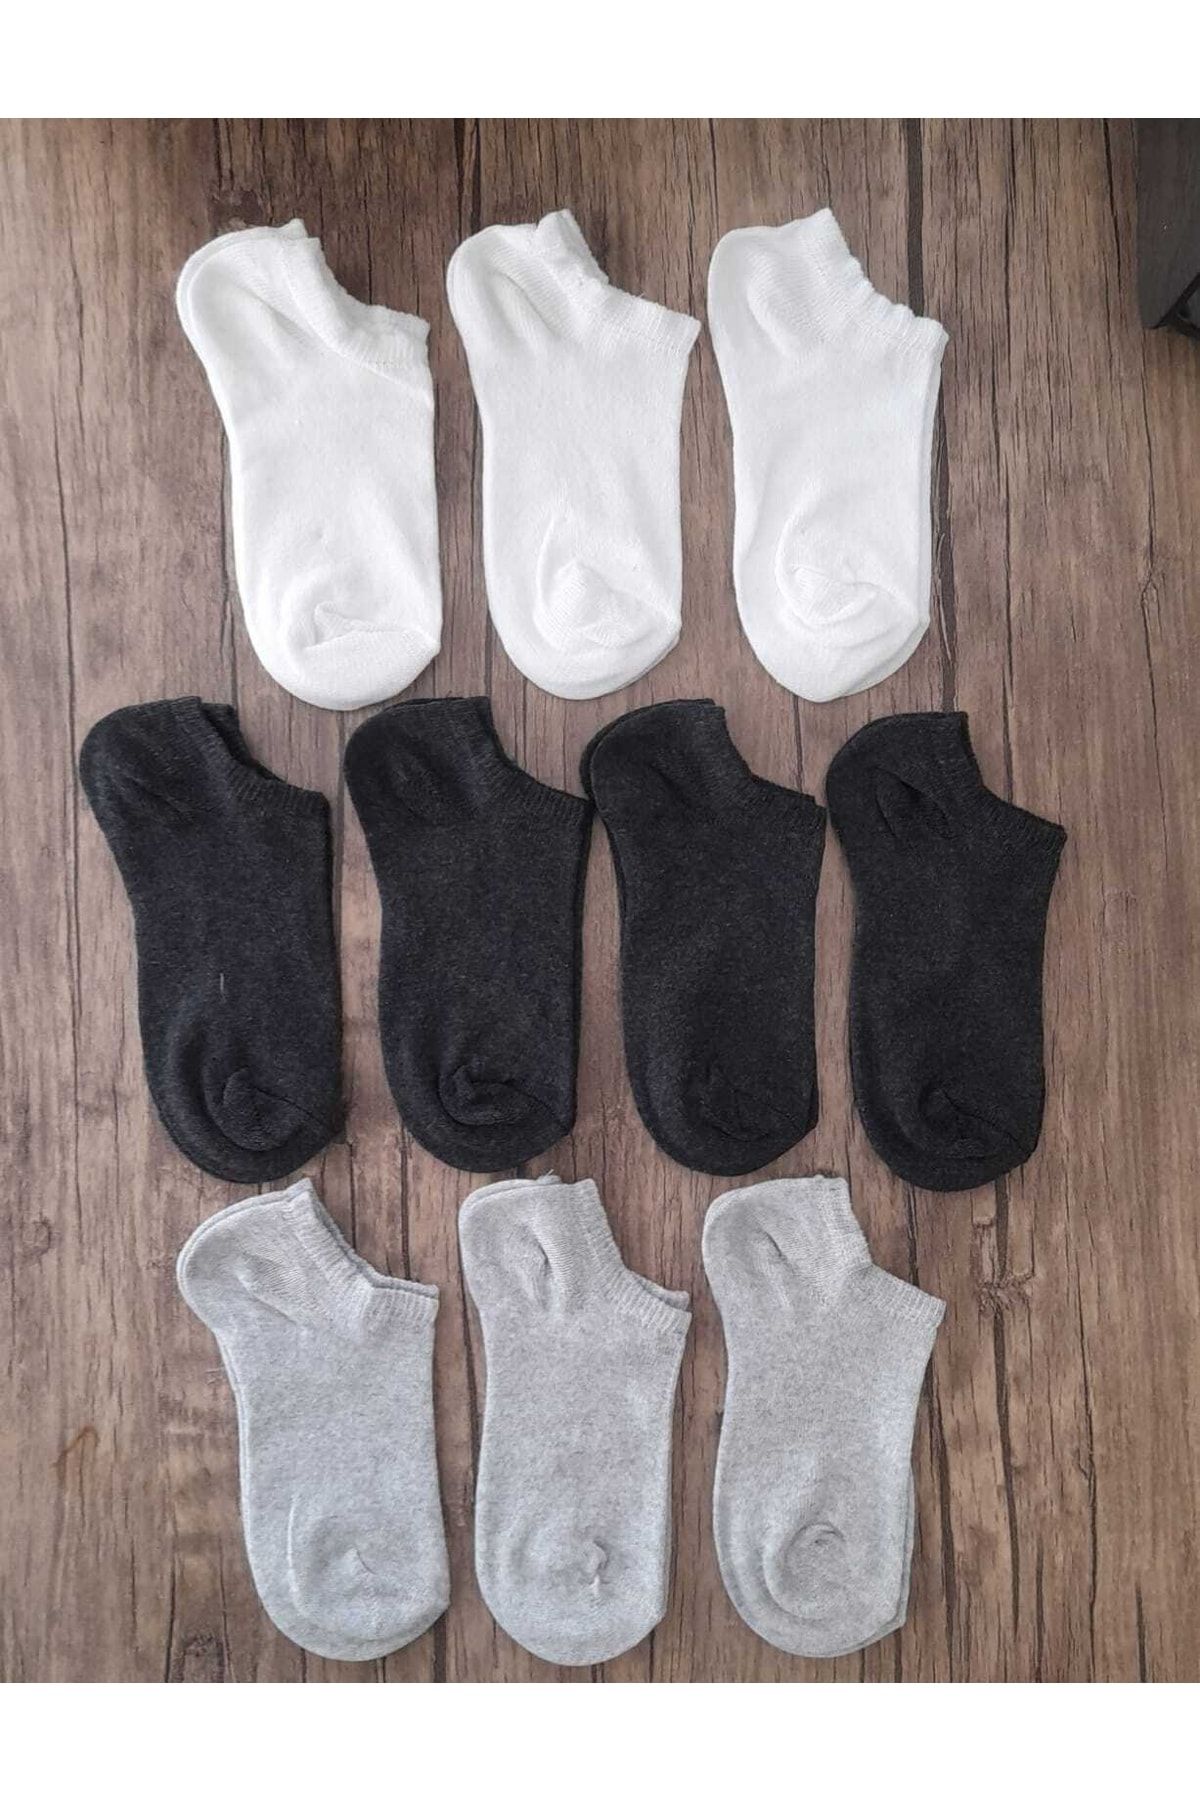 SOCKSHION Çocuk Patik Çorap 10 Çift Asorti Renkler